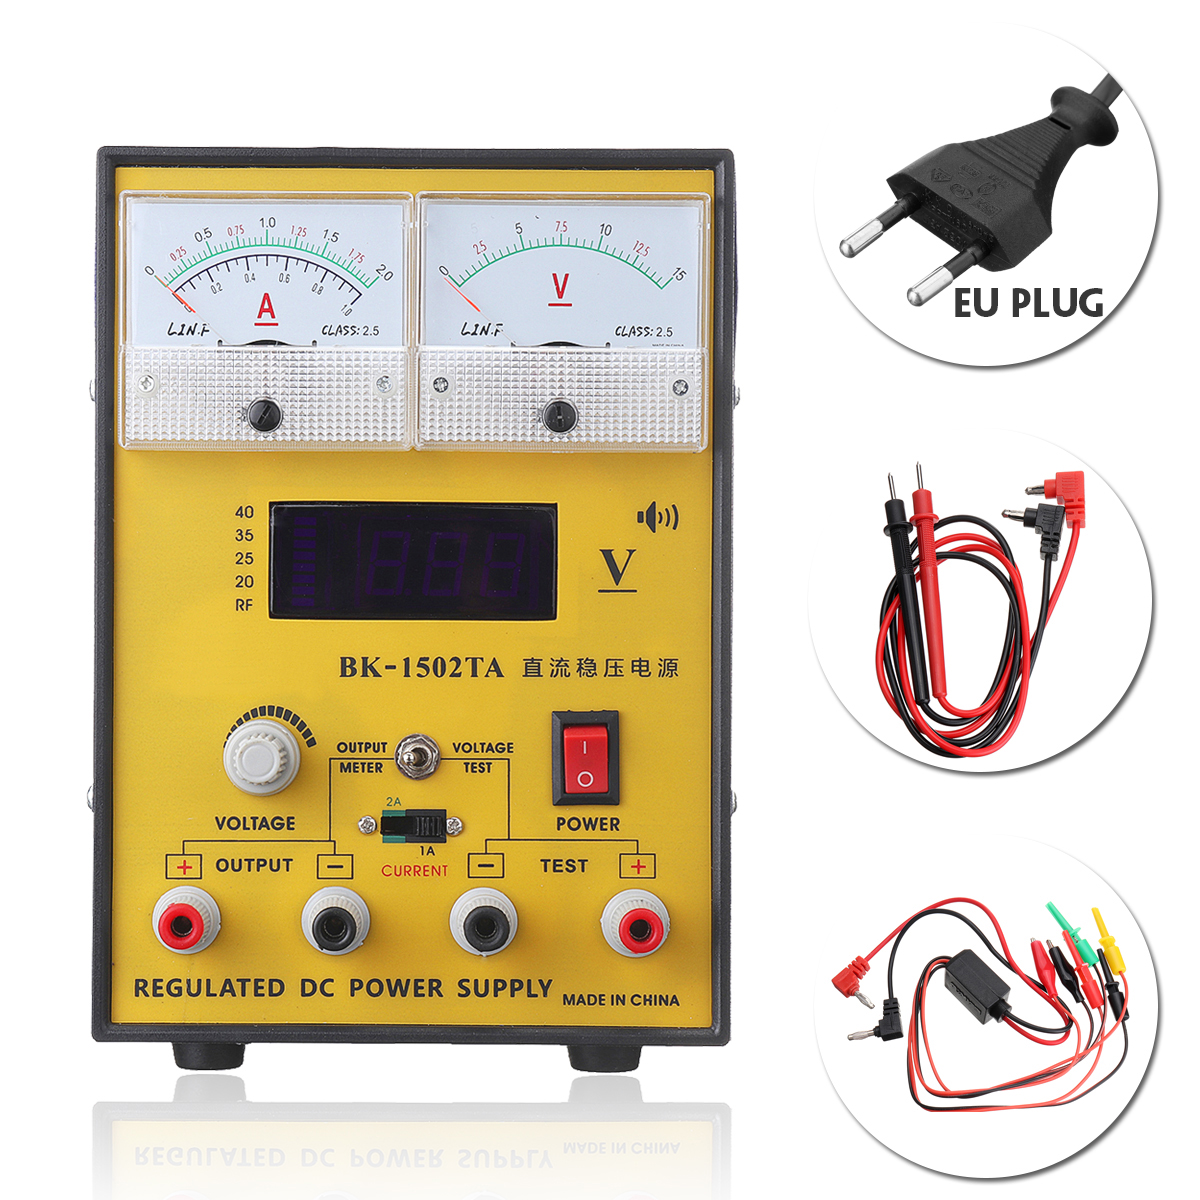 110V220V-15V-2A-Portable-Digital-LED-DC-Power-Supply-Adjustable-Regulator-EU-PlugUS-Plug-1282416-9